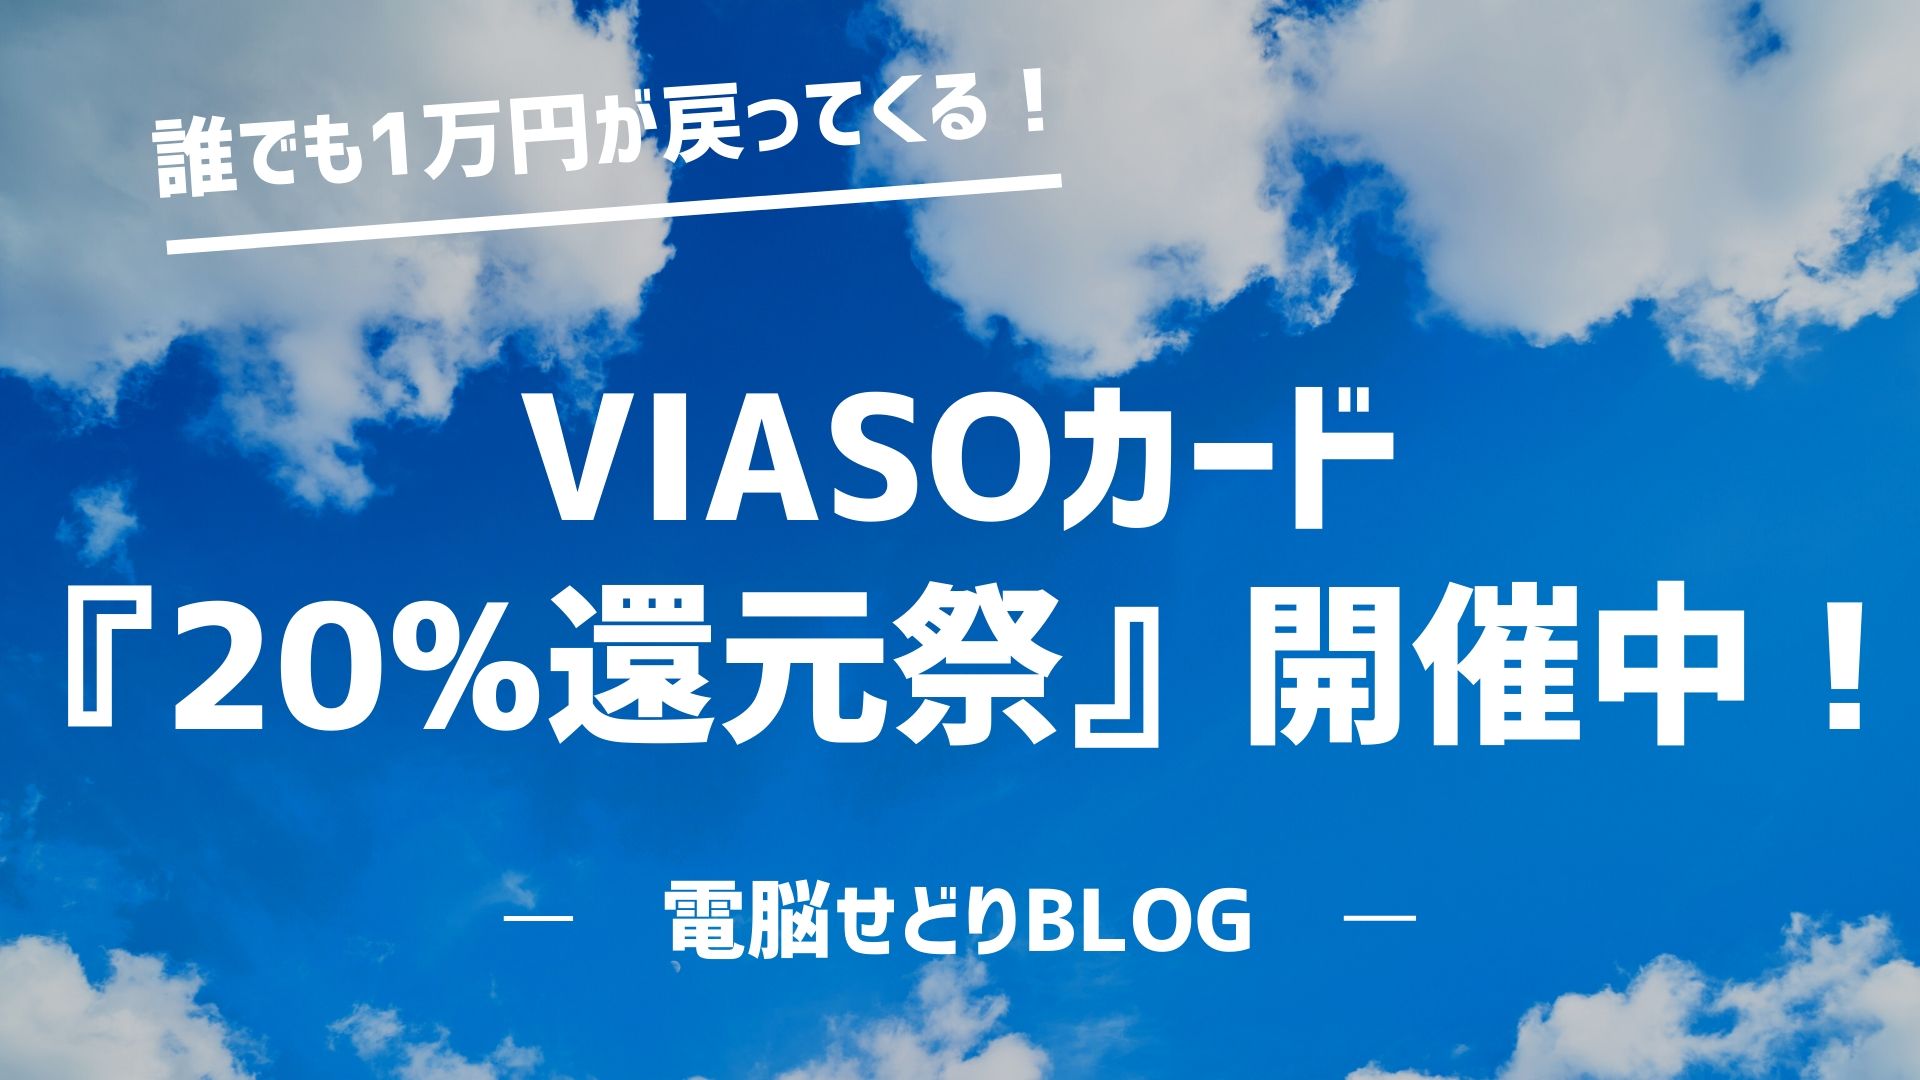 【誰でも1万円が戻ってくる！】VIASOカード『20%還元祭』キャンペーンの概要と注意点を画像付きで分かりやすく解説。